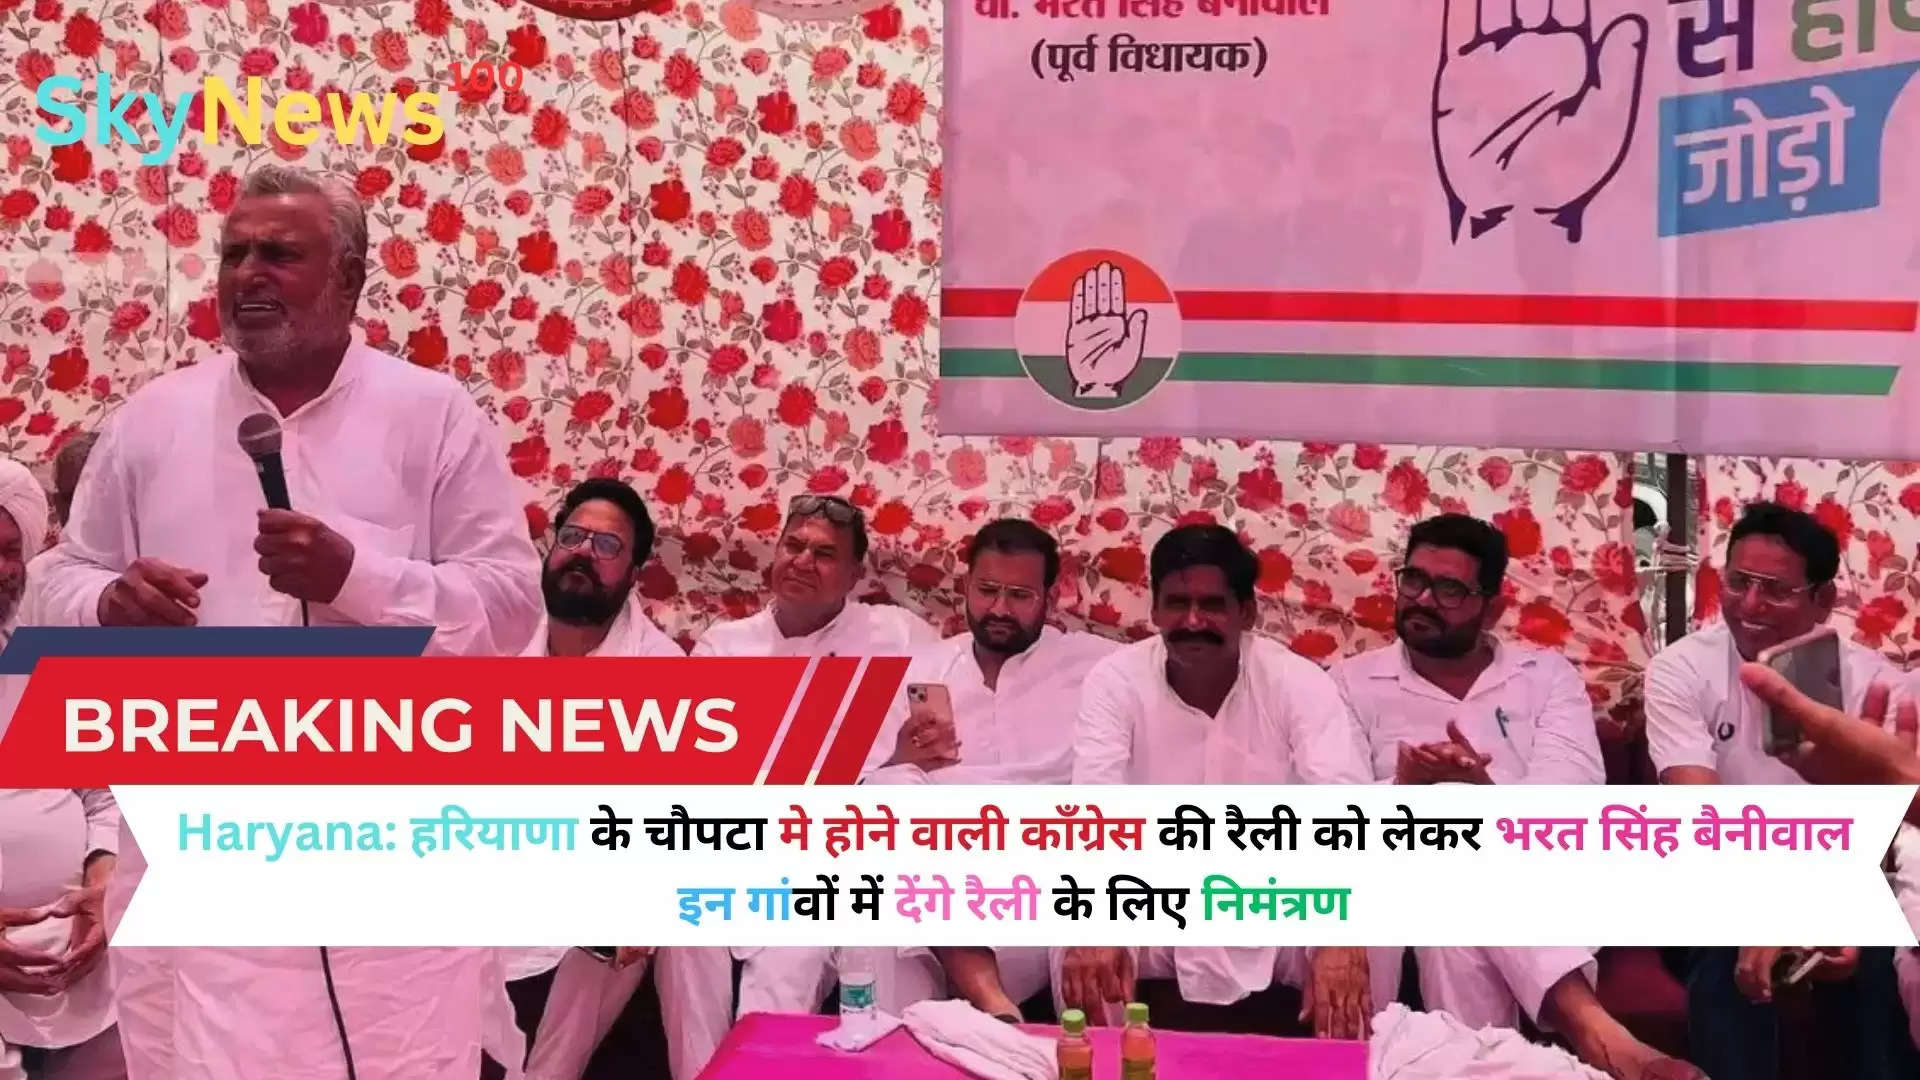 Haryana:  हरियाणा के चौपटा मे होने वाली कॉंग्रेस की रैली को लेकर भरत सिंह बैनीवाल इन गांवों में देंगे रैली के लिए निमंत्रण